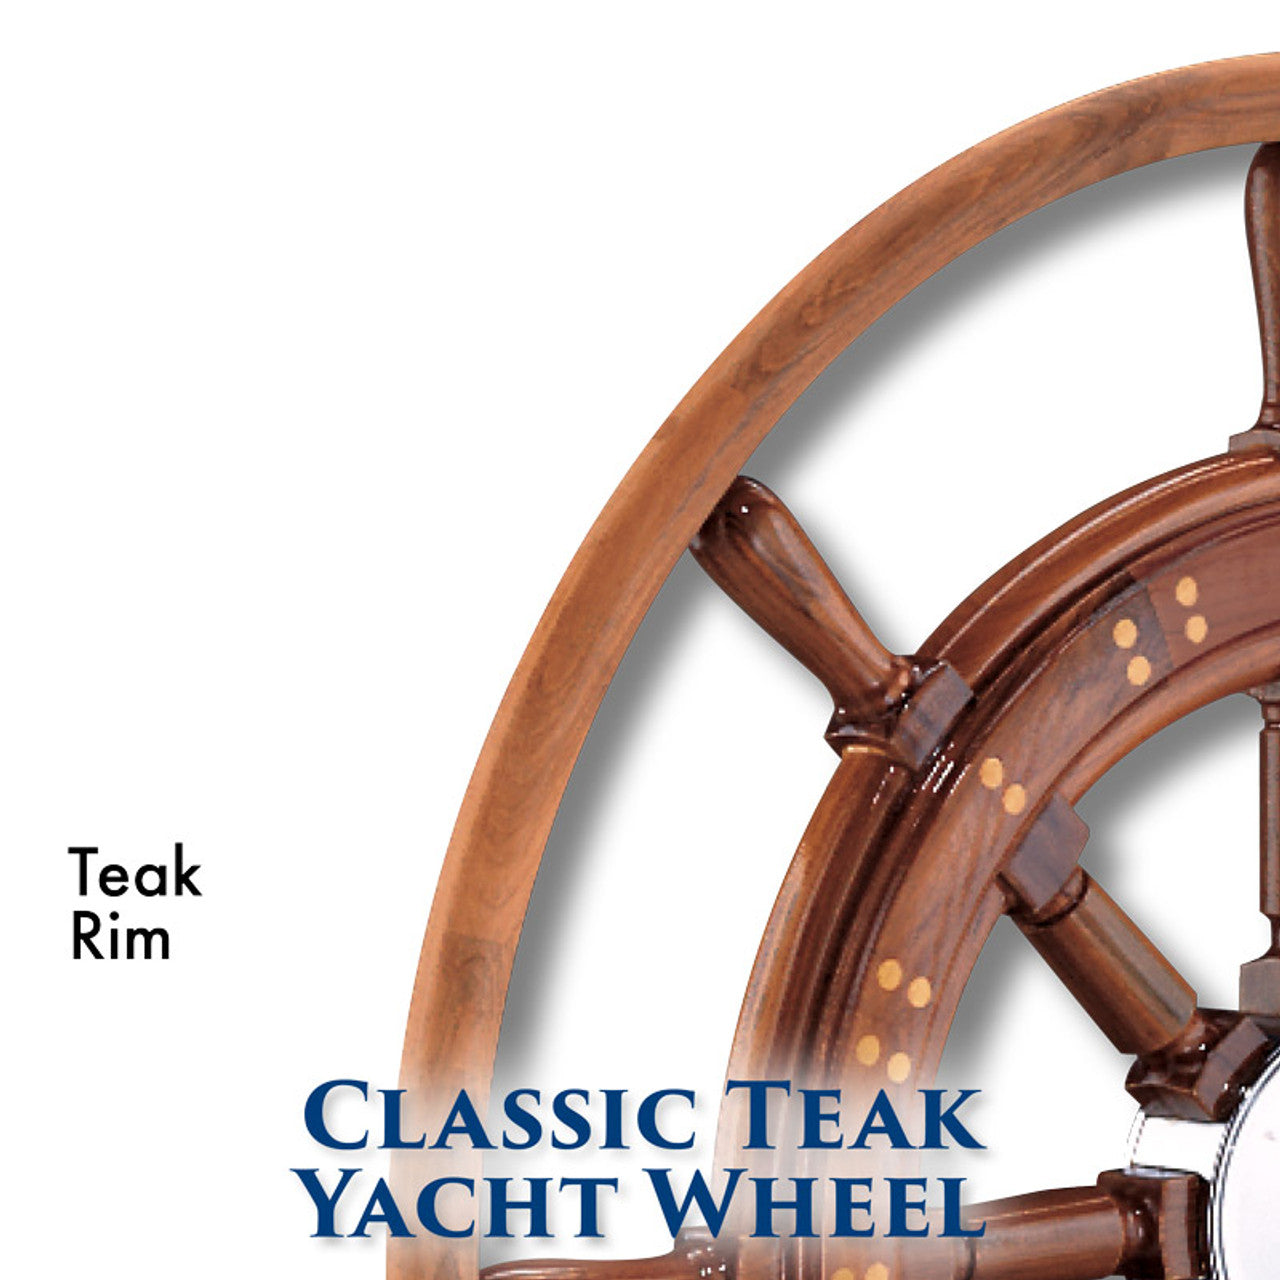 Edson 30" Teak Yacht Wheel w/Teak Rim & Chrome Hub